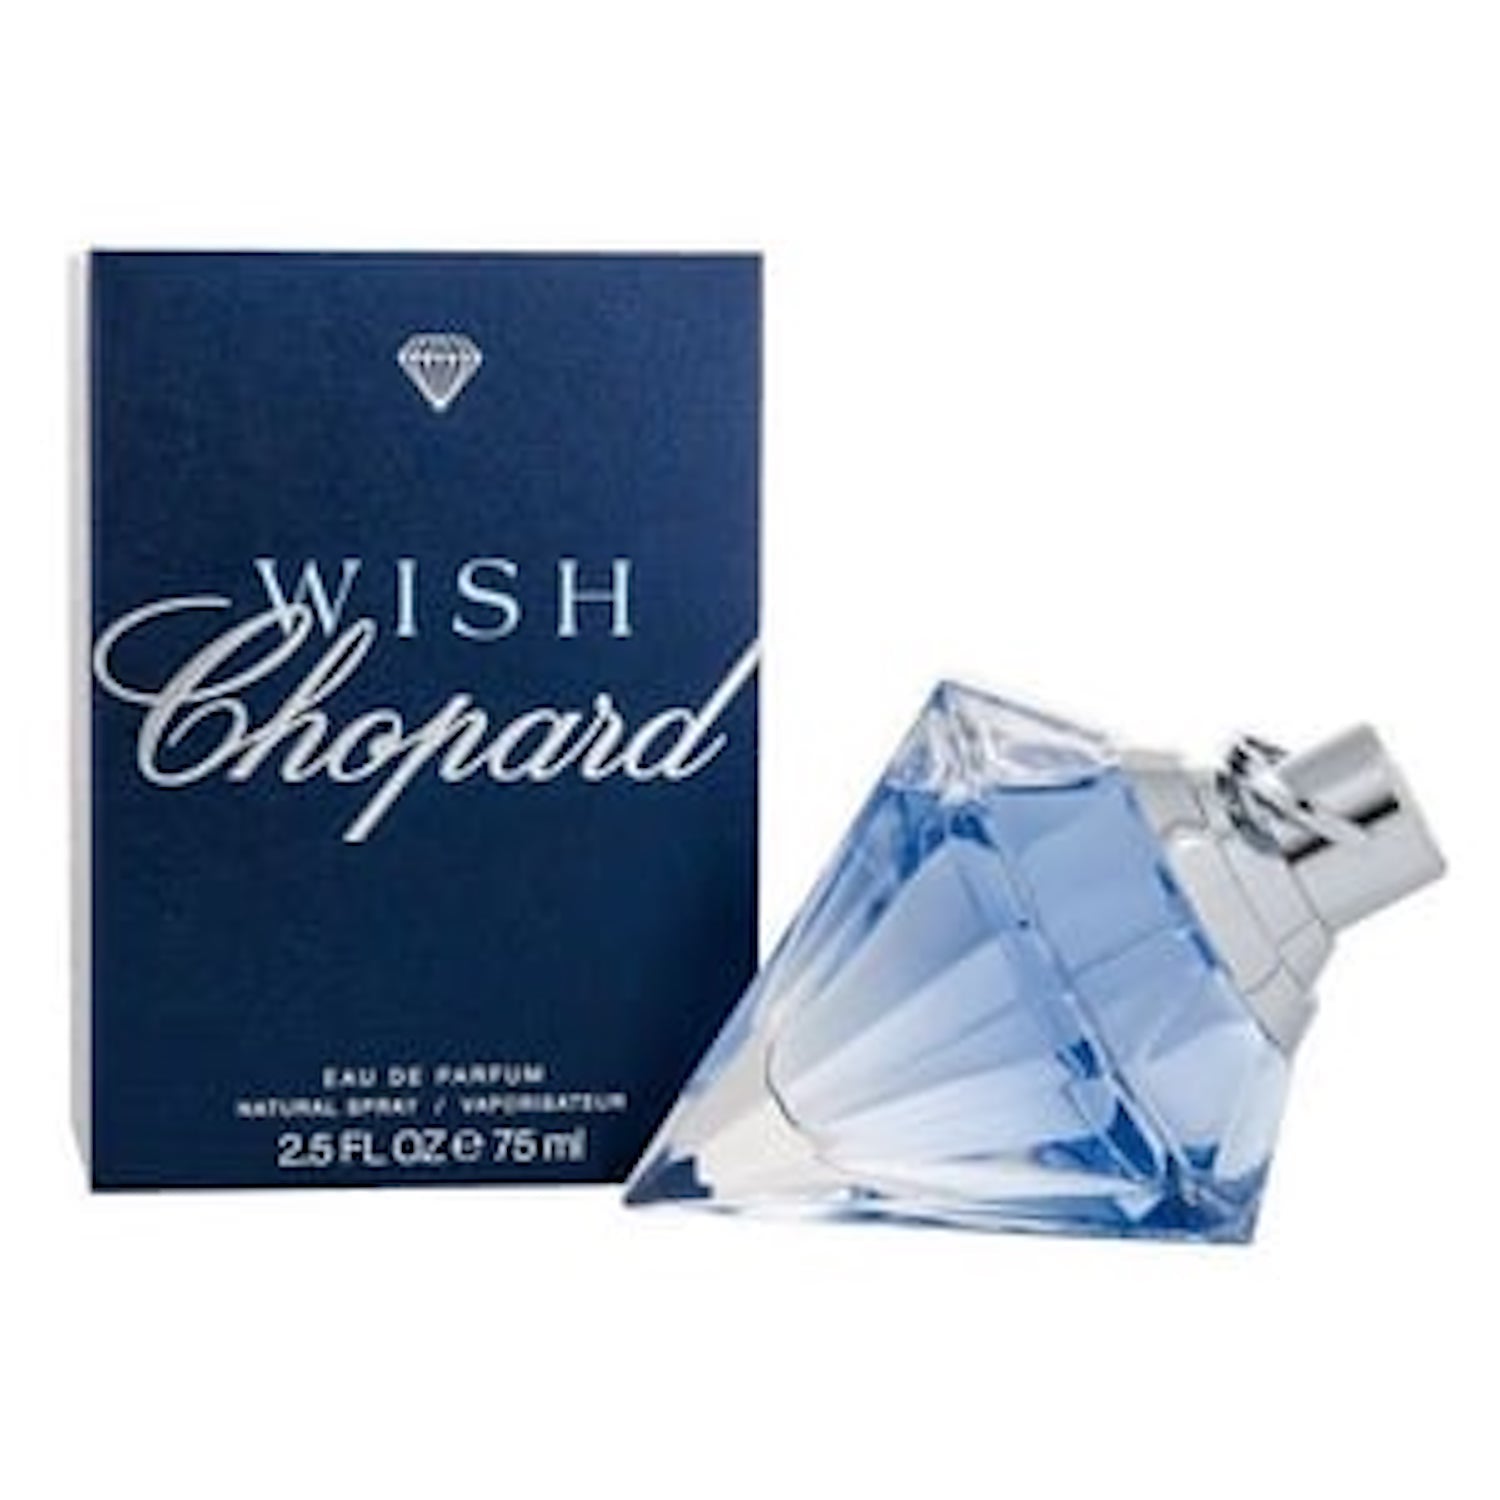 Wish by Chopard for Women , Eau de Parfum - 75ml